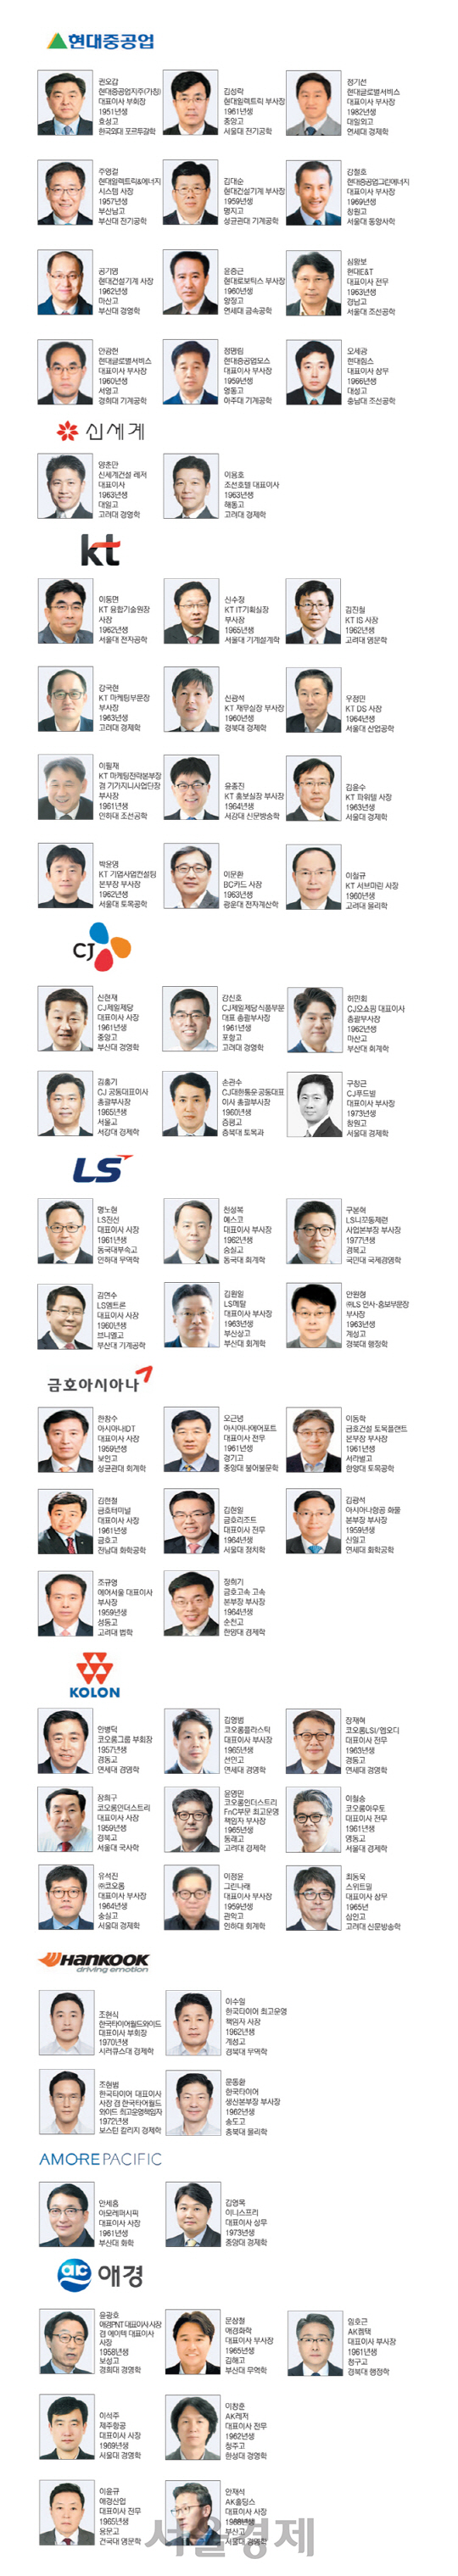 [2018 재계인사 Ⅱ]현대중공업·신세계·KT·CJ·LS·금호아시아나그룹 등